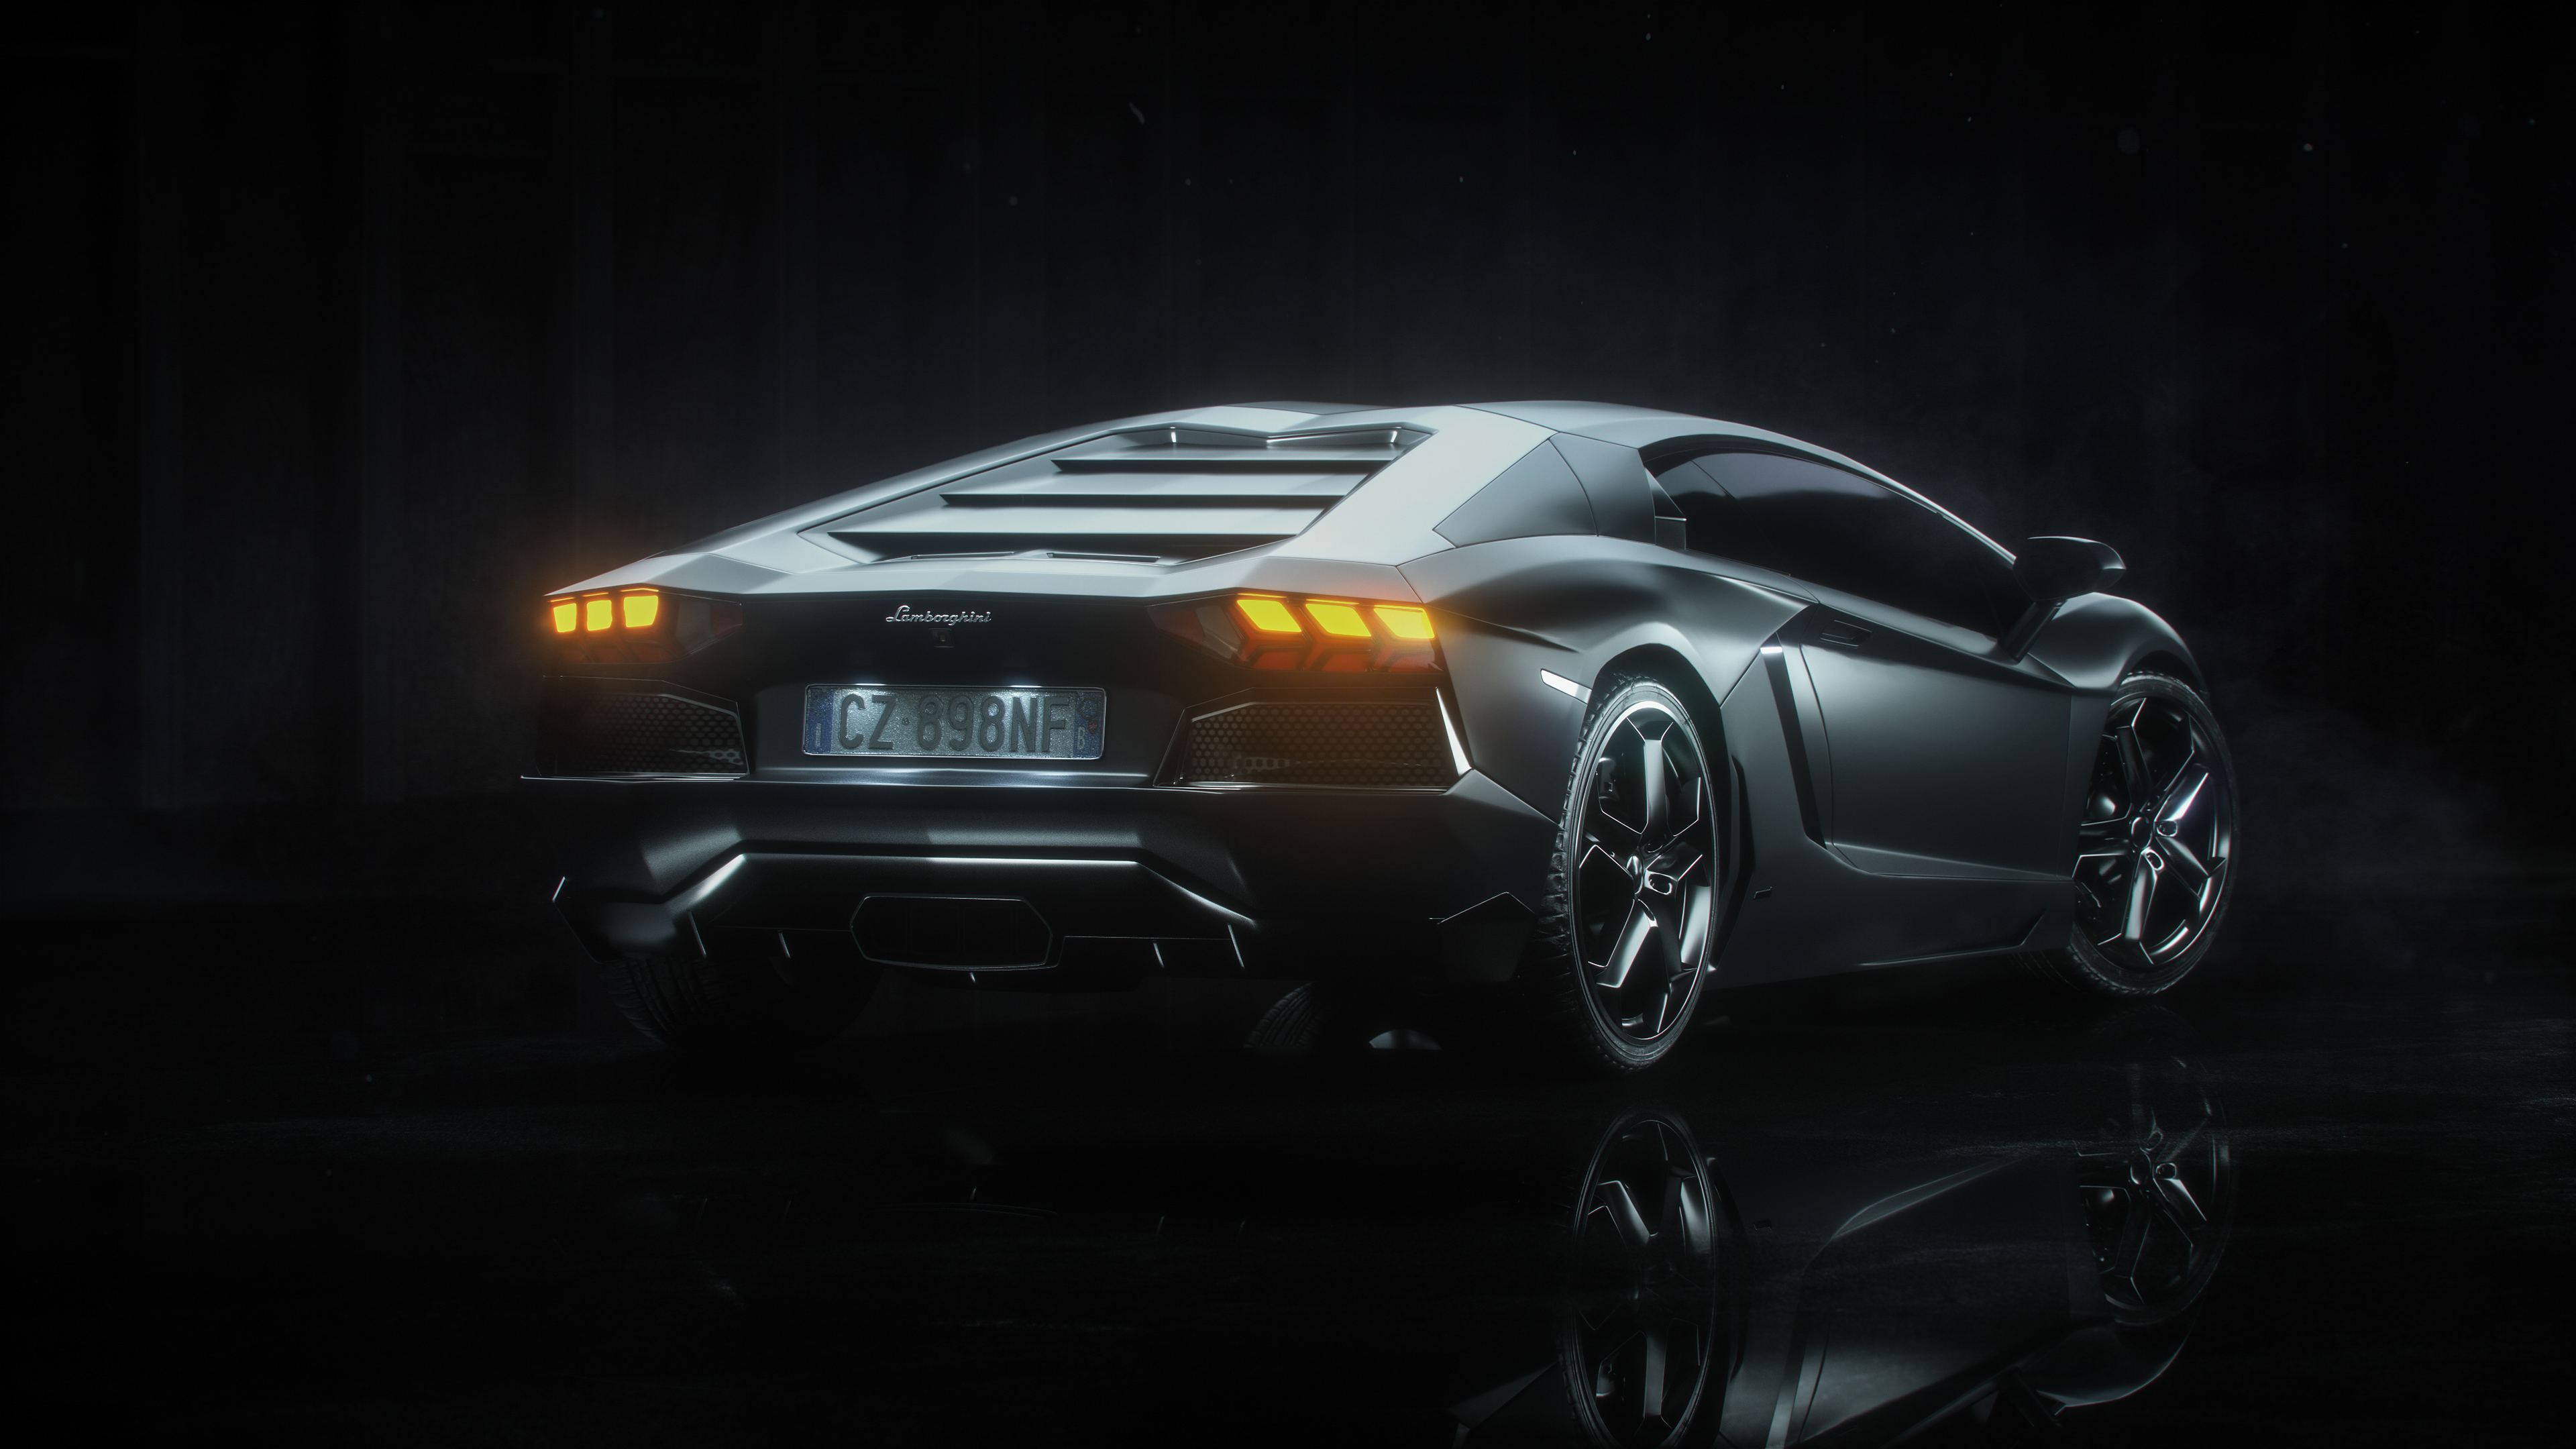 Lamborghini rear view